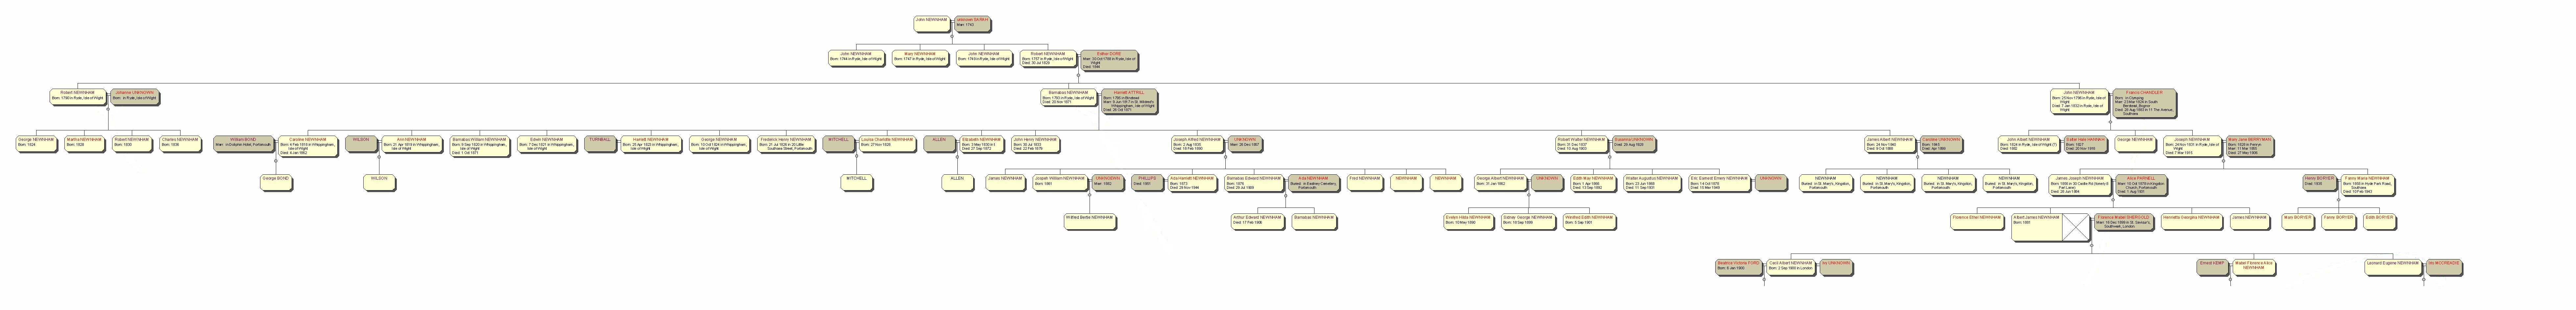 Diagram of full family tree